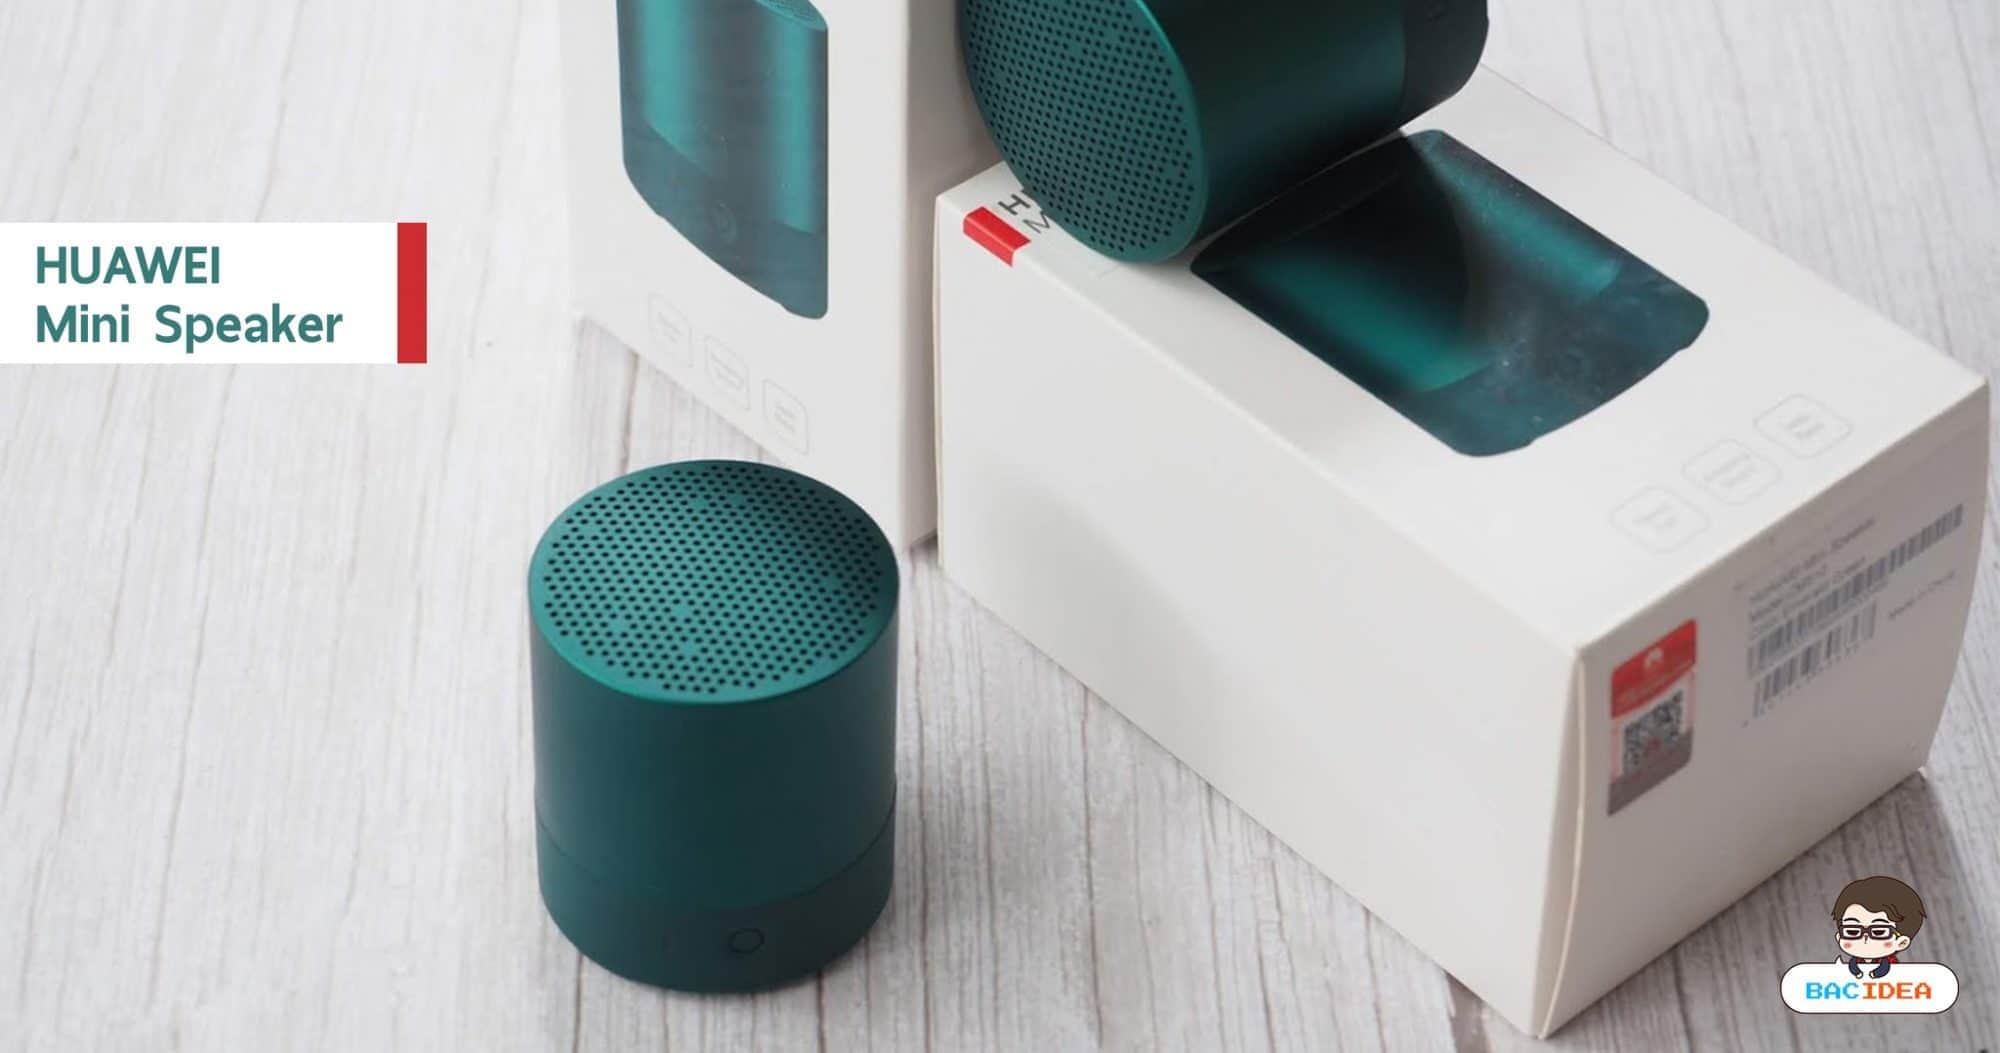 รีวิว HUAWEI Mini Speaker ลำโพงจิ๋วเล็กกว่าฝ่ามือ เสียงเกินขนาดตัว ซื้อคู่คุ้มกว่า 1